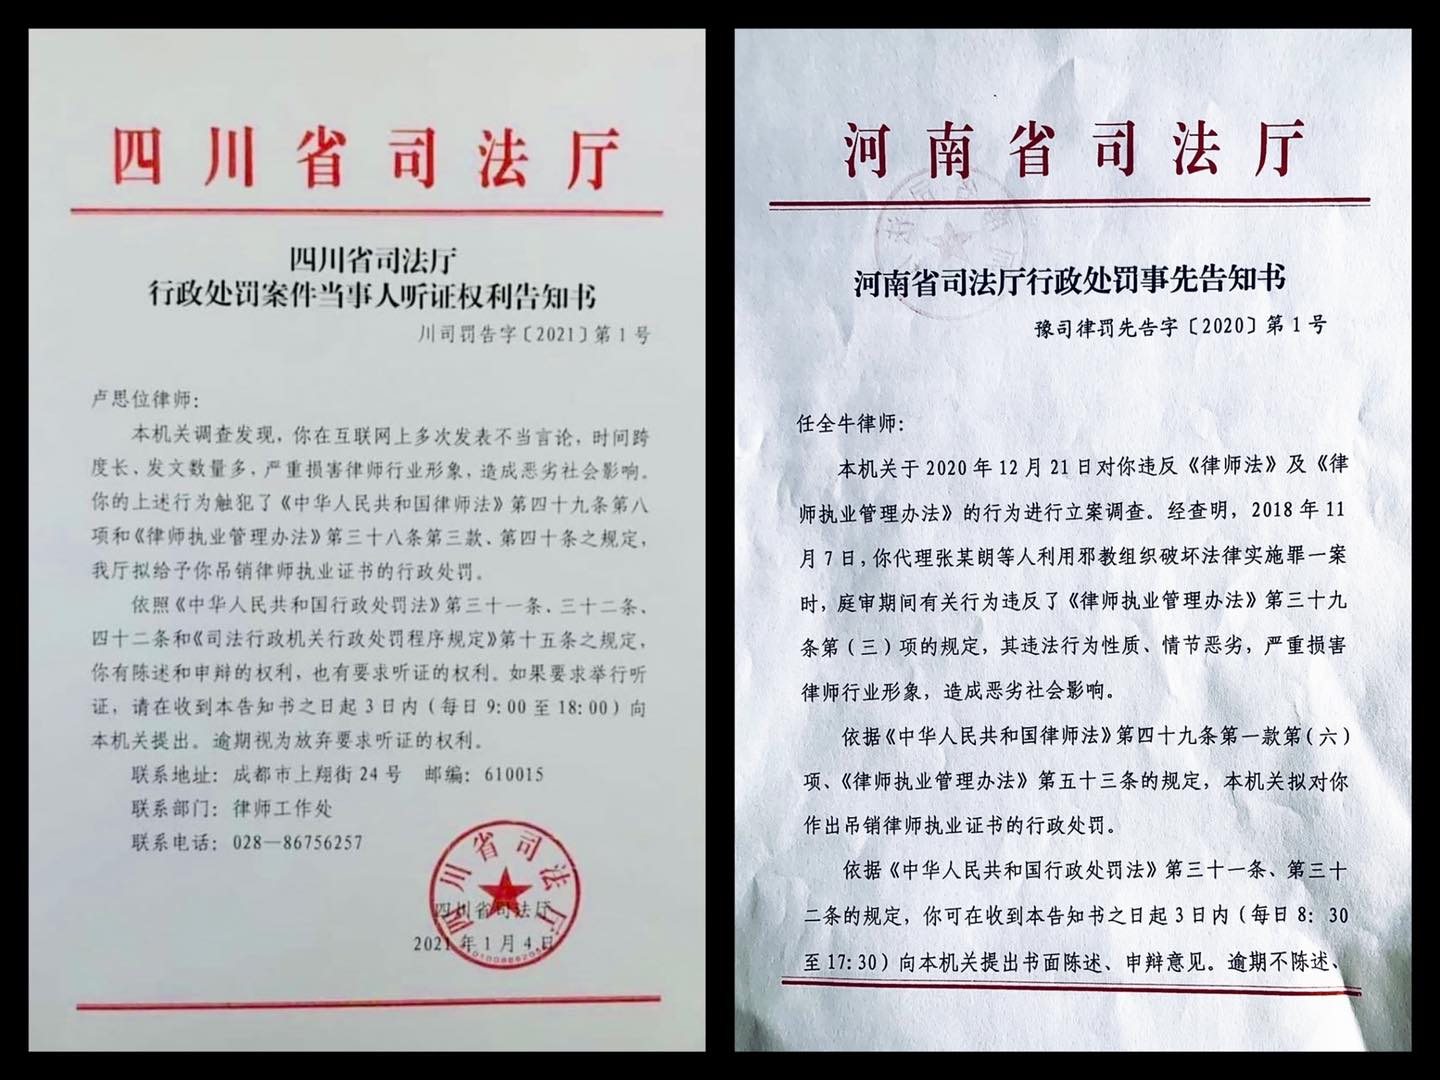 四川省司法廳和河南省司法廳發通知，擬吊銷大陸人權律師盧思位及任全牛的律師執照。（12港人關注組 Facebook）